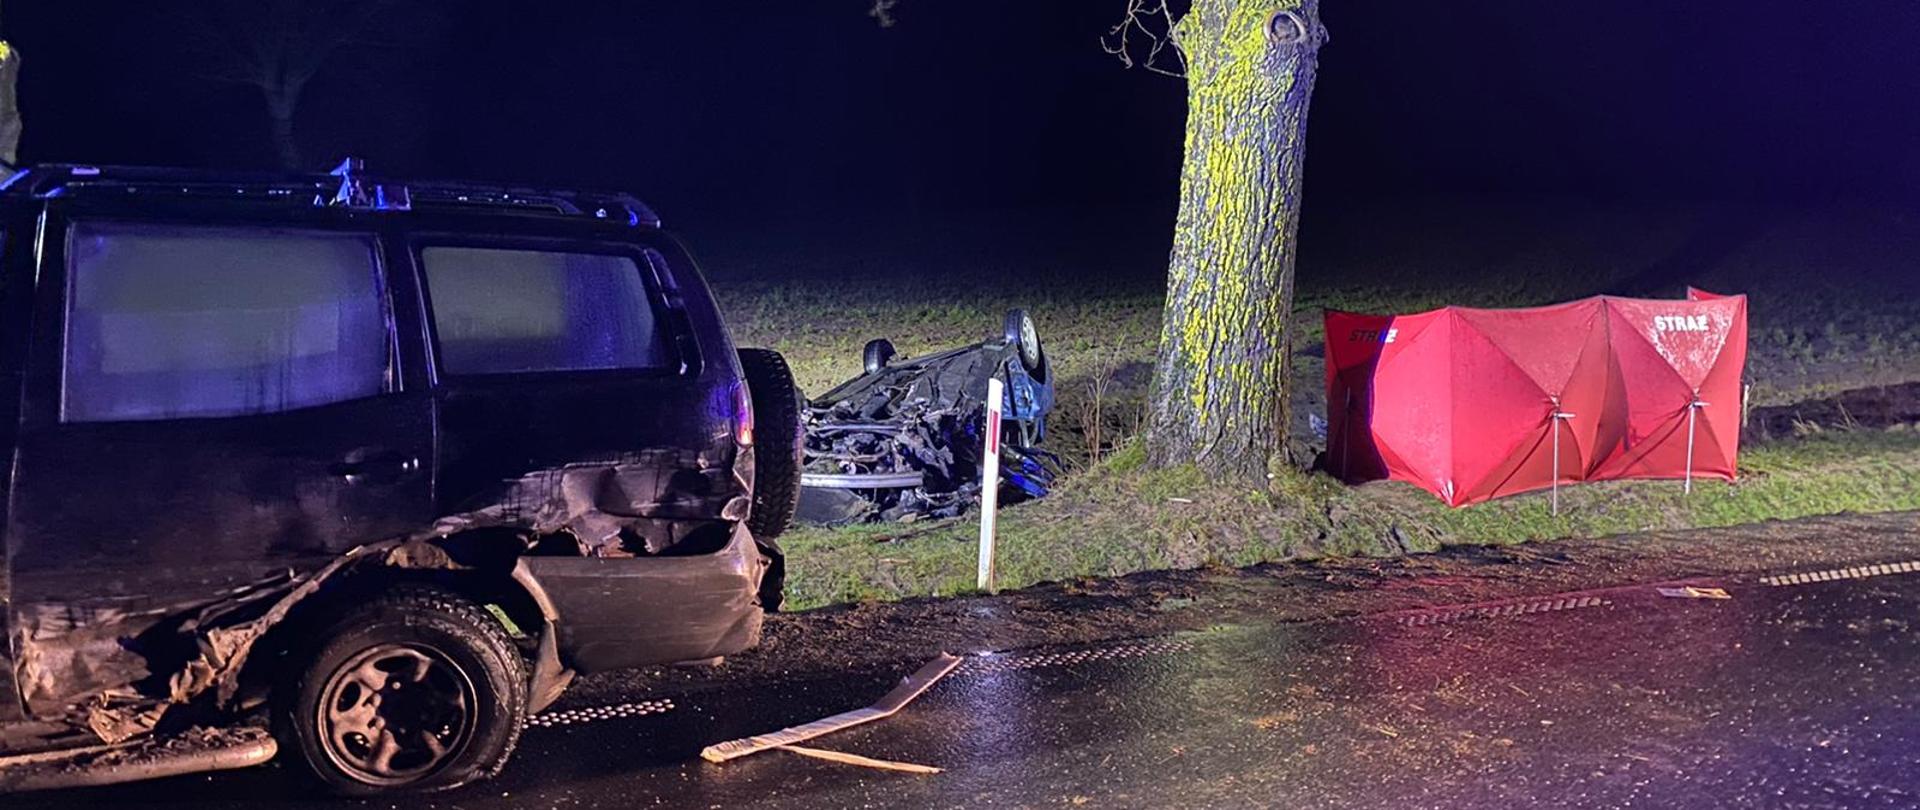 Na zdjęciu znajduje się roztrzaskany samochód z prawej strony oraz z tyłu. Za samochodem znajduje się drzewo obok, którego znajduje się drugi przewrócony samochód, z drugiej strony drzewa rozstawiony jest czerwony parawan z napisem STRAŻ.